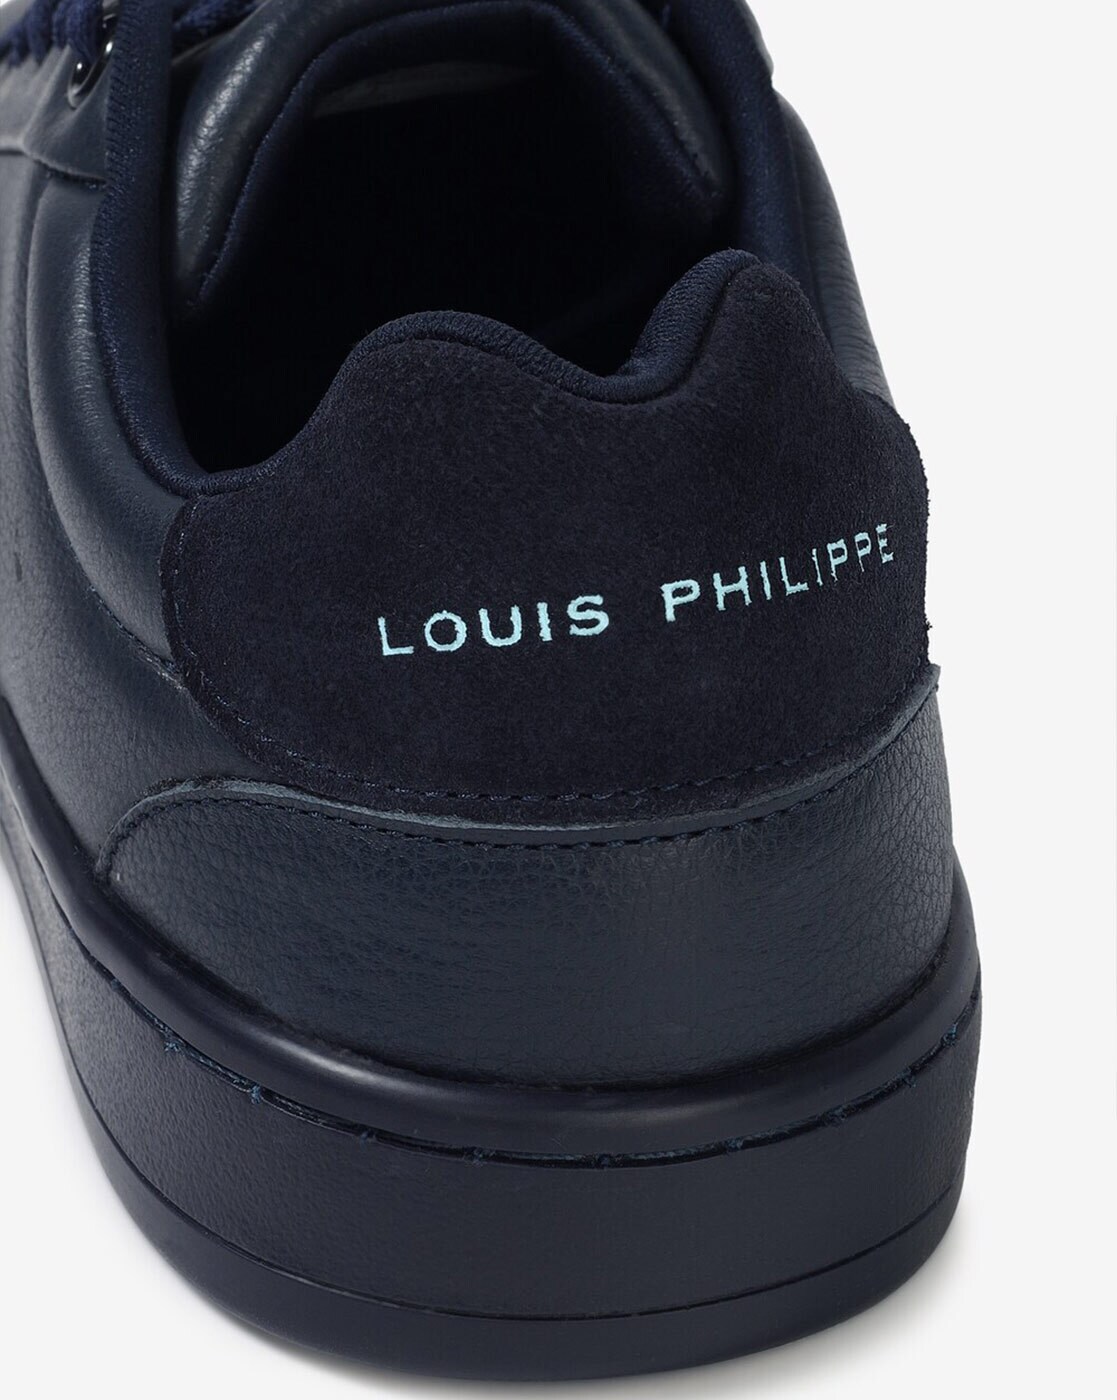 Buy Louis Philippe Men Cream Navy Sneakers online